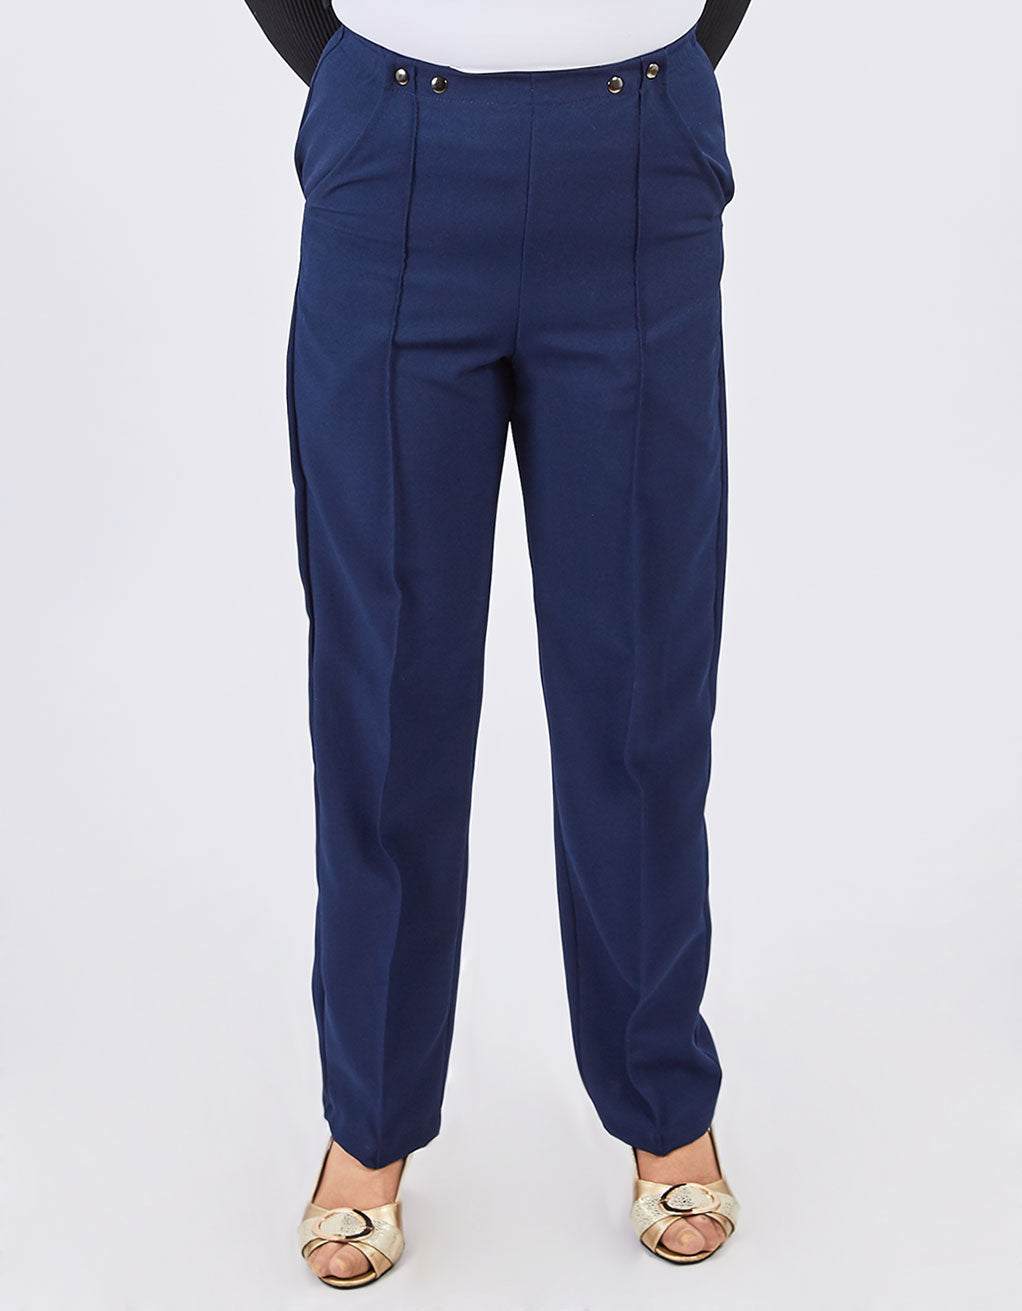 Pantalon adapté marine pour femme DT | FP62525 | EZ